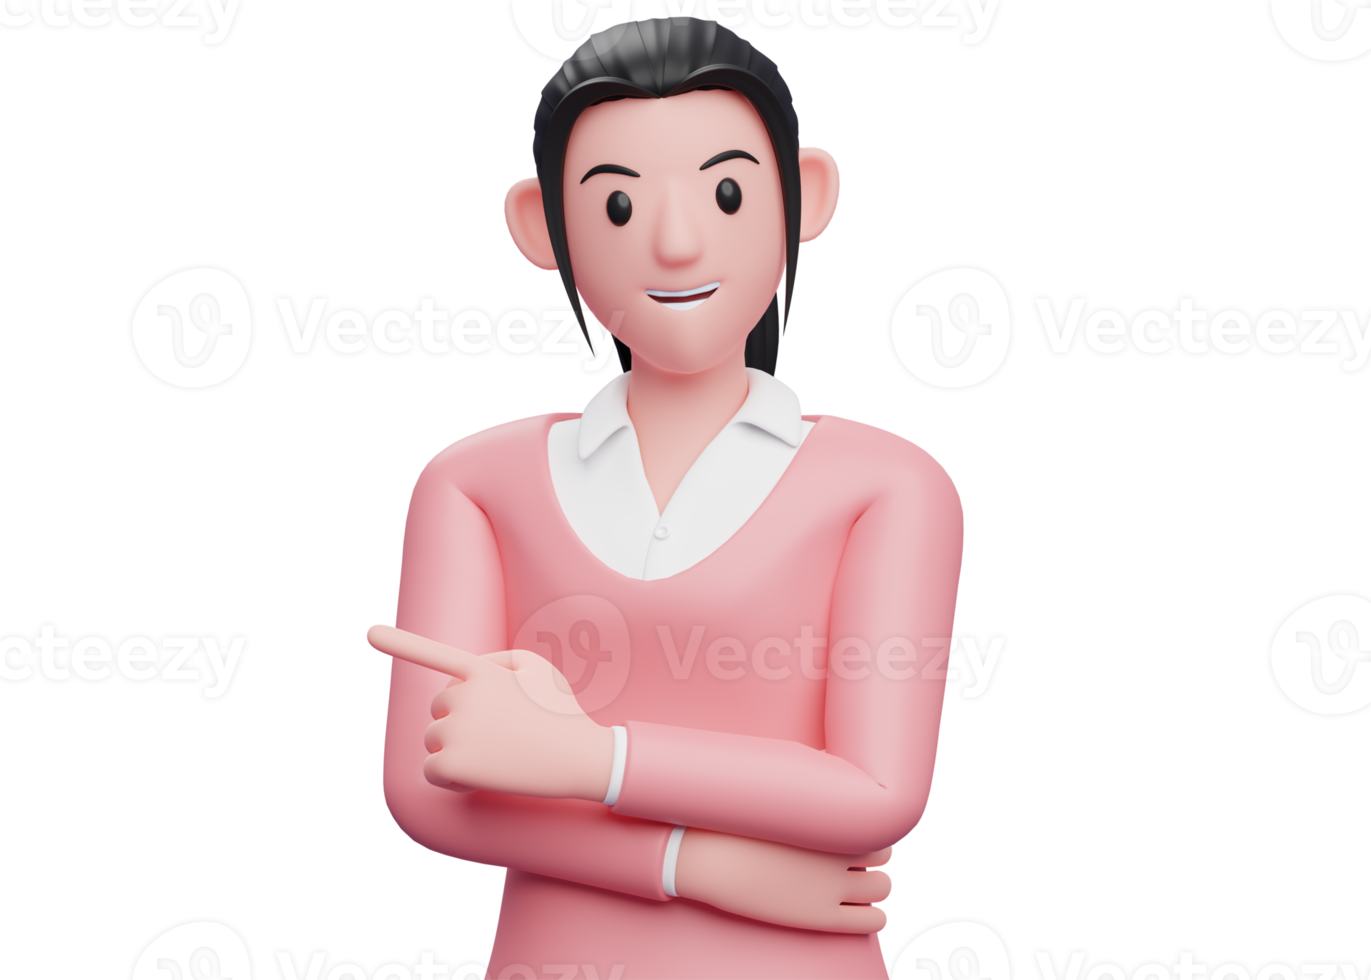 Süßes Mädchen in rosafarbenem Pullover, das mit dem Finger nach links zeigt und die Hand auf der Brust kreuzt, 3D-Renderdarstellung der Geschäftsfrau png